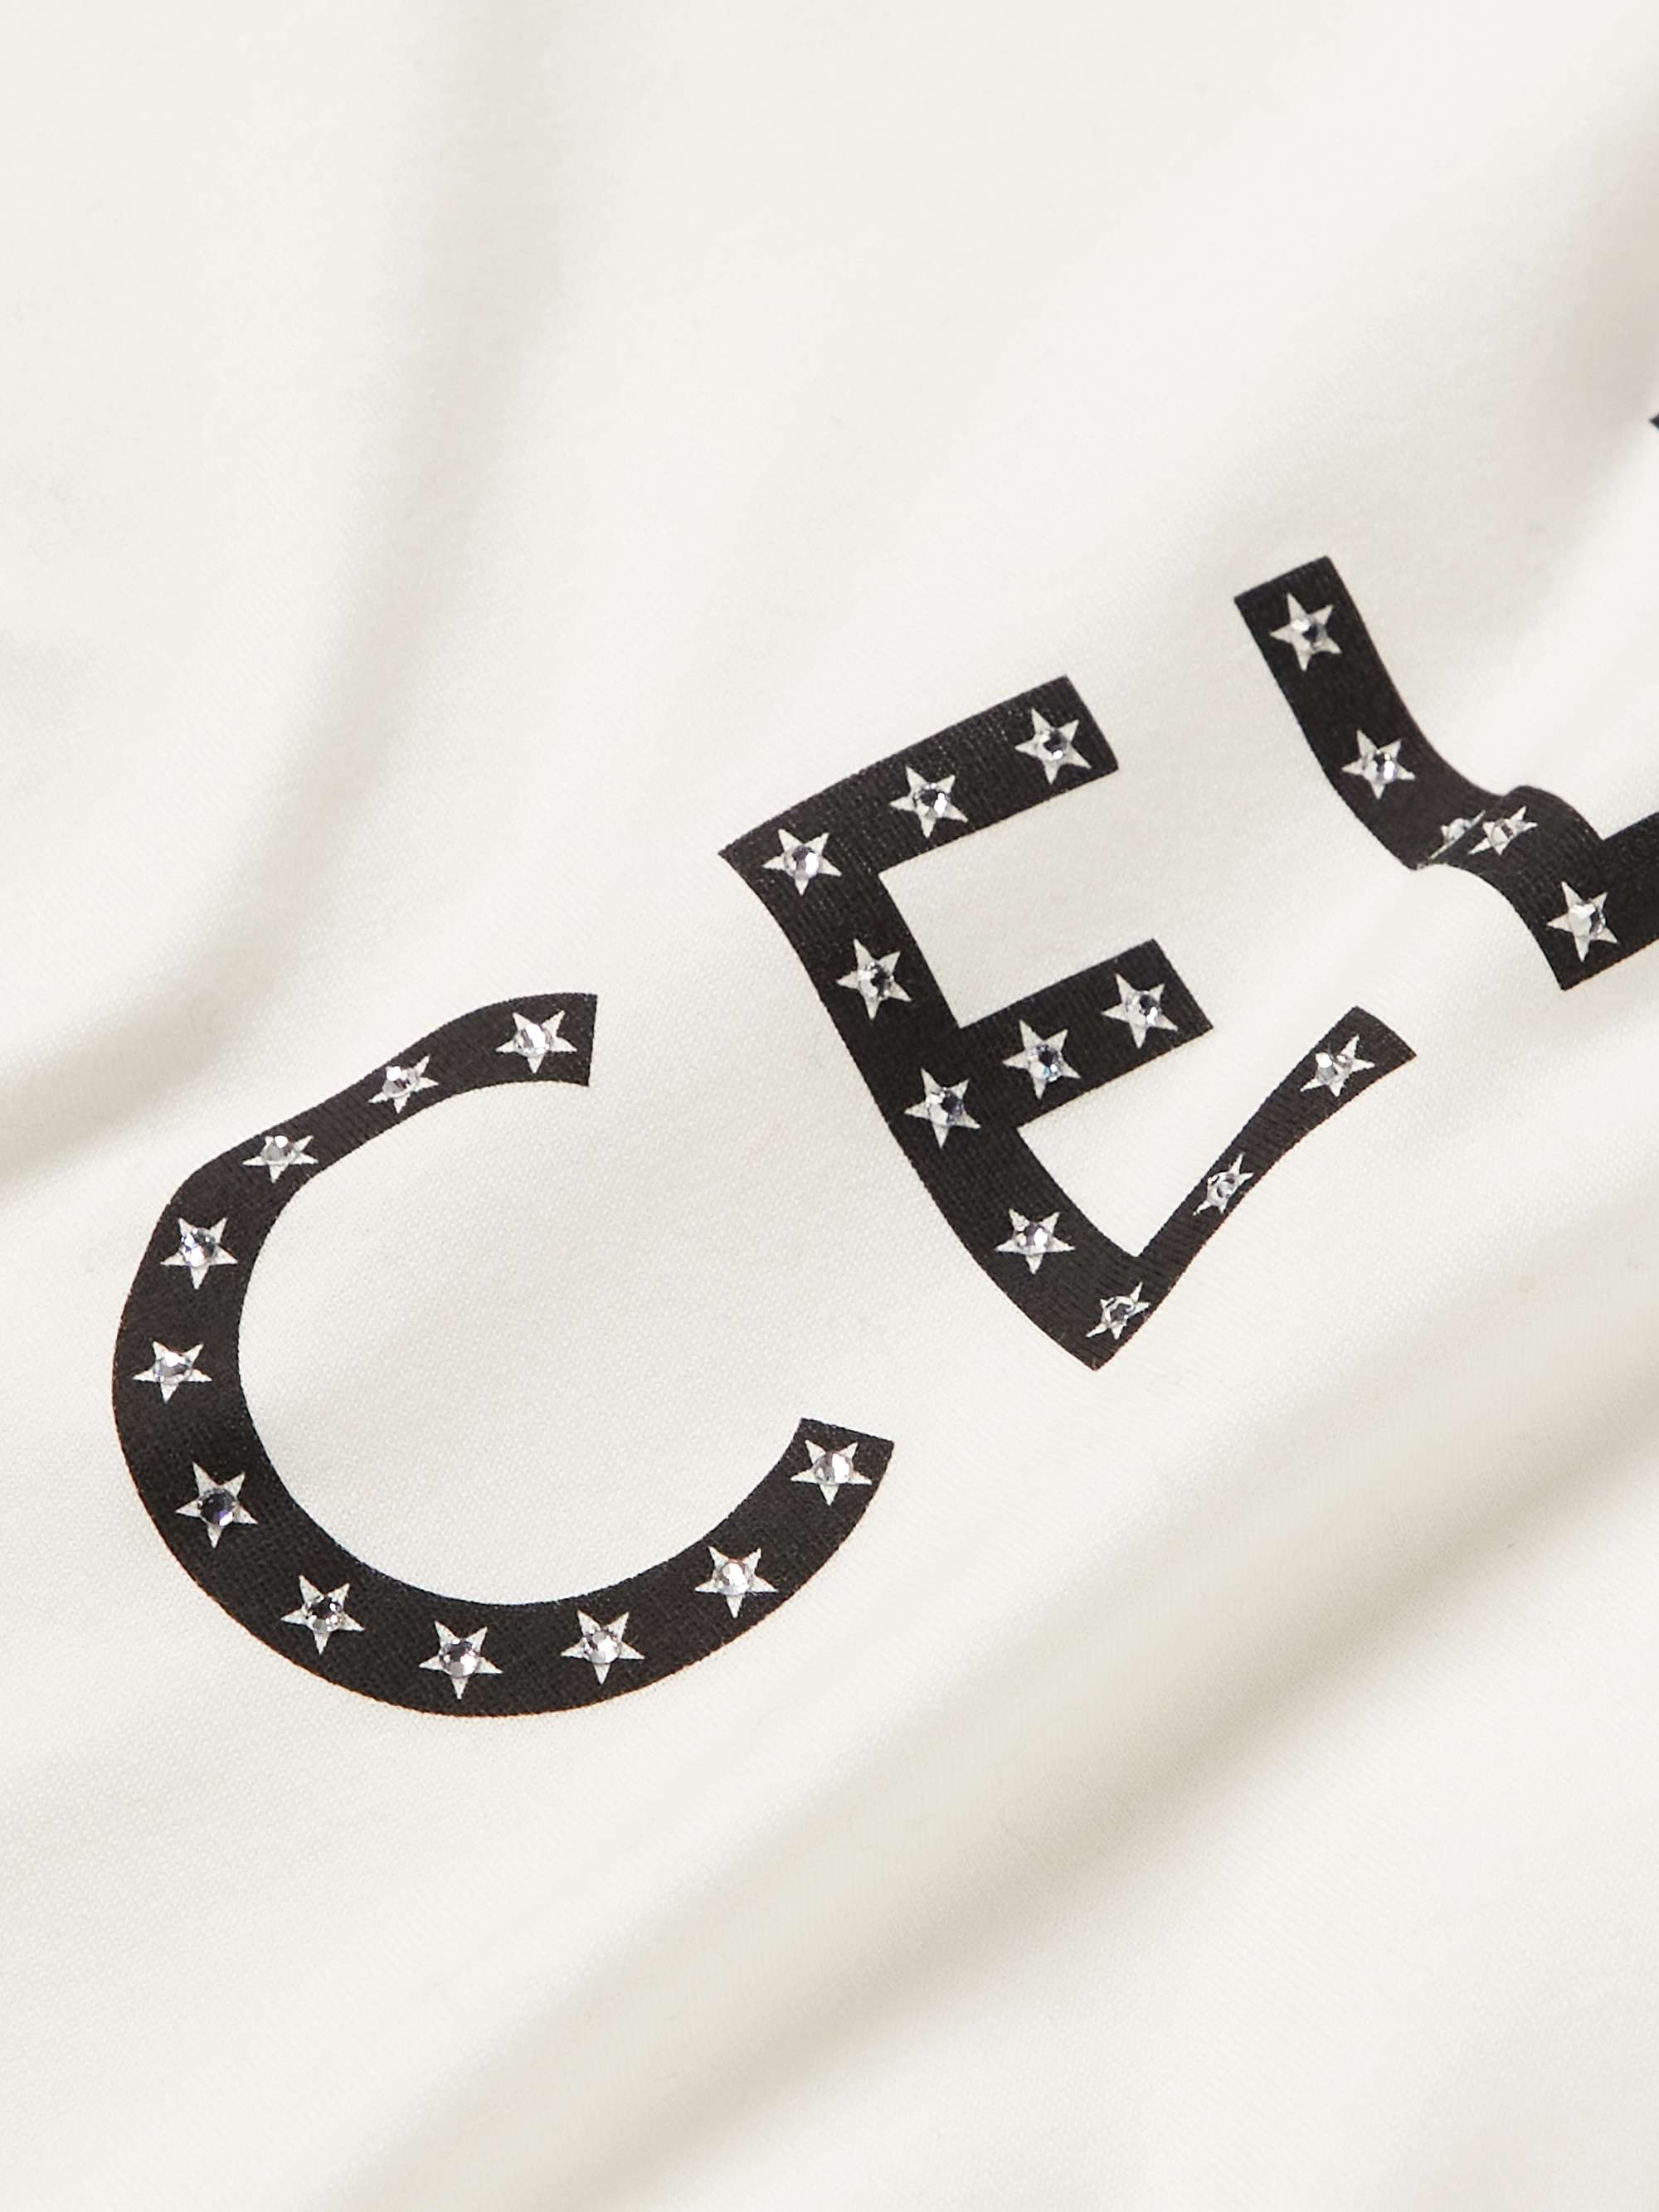 CELINE Crystal-Embellished Logo-Print Cotton-Jersey T-Shirt